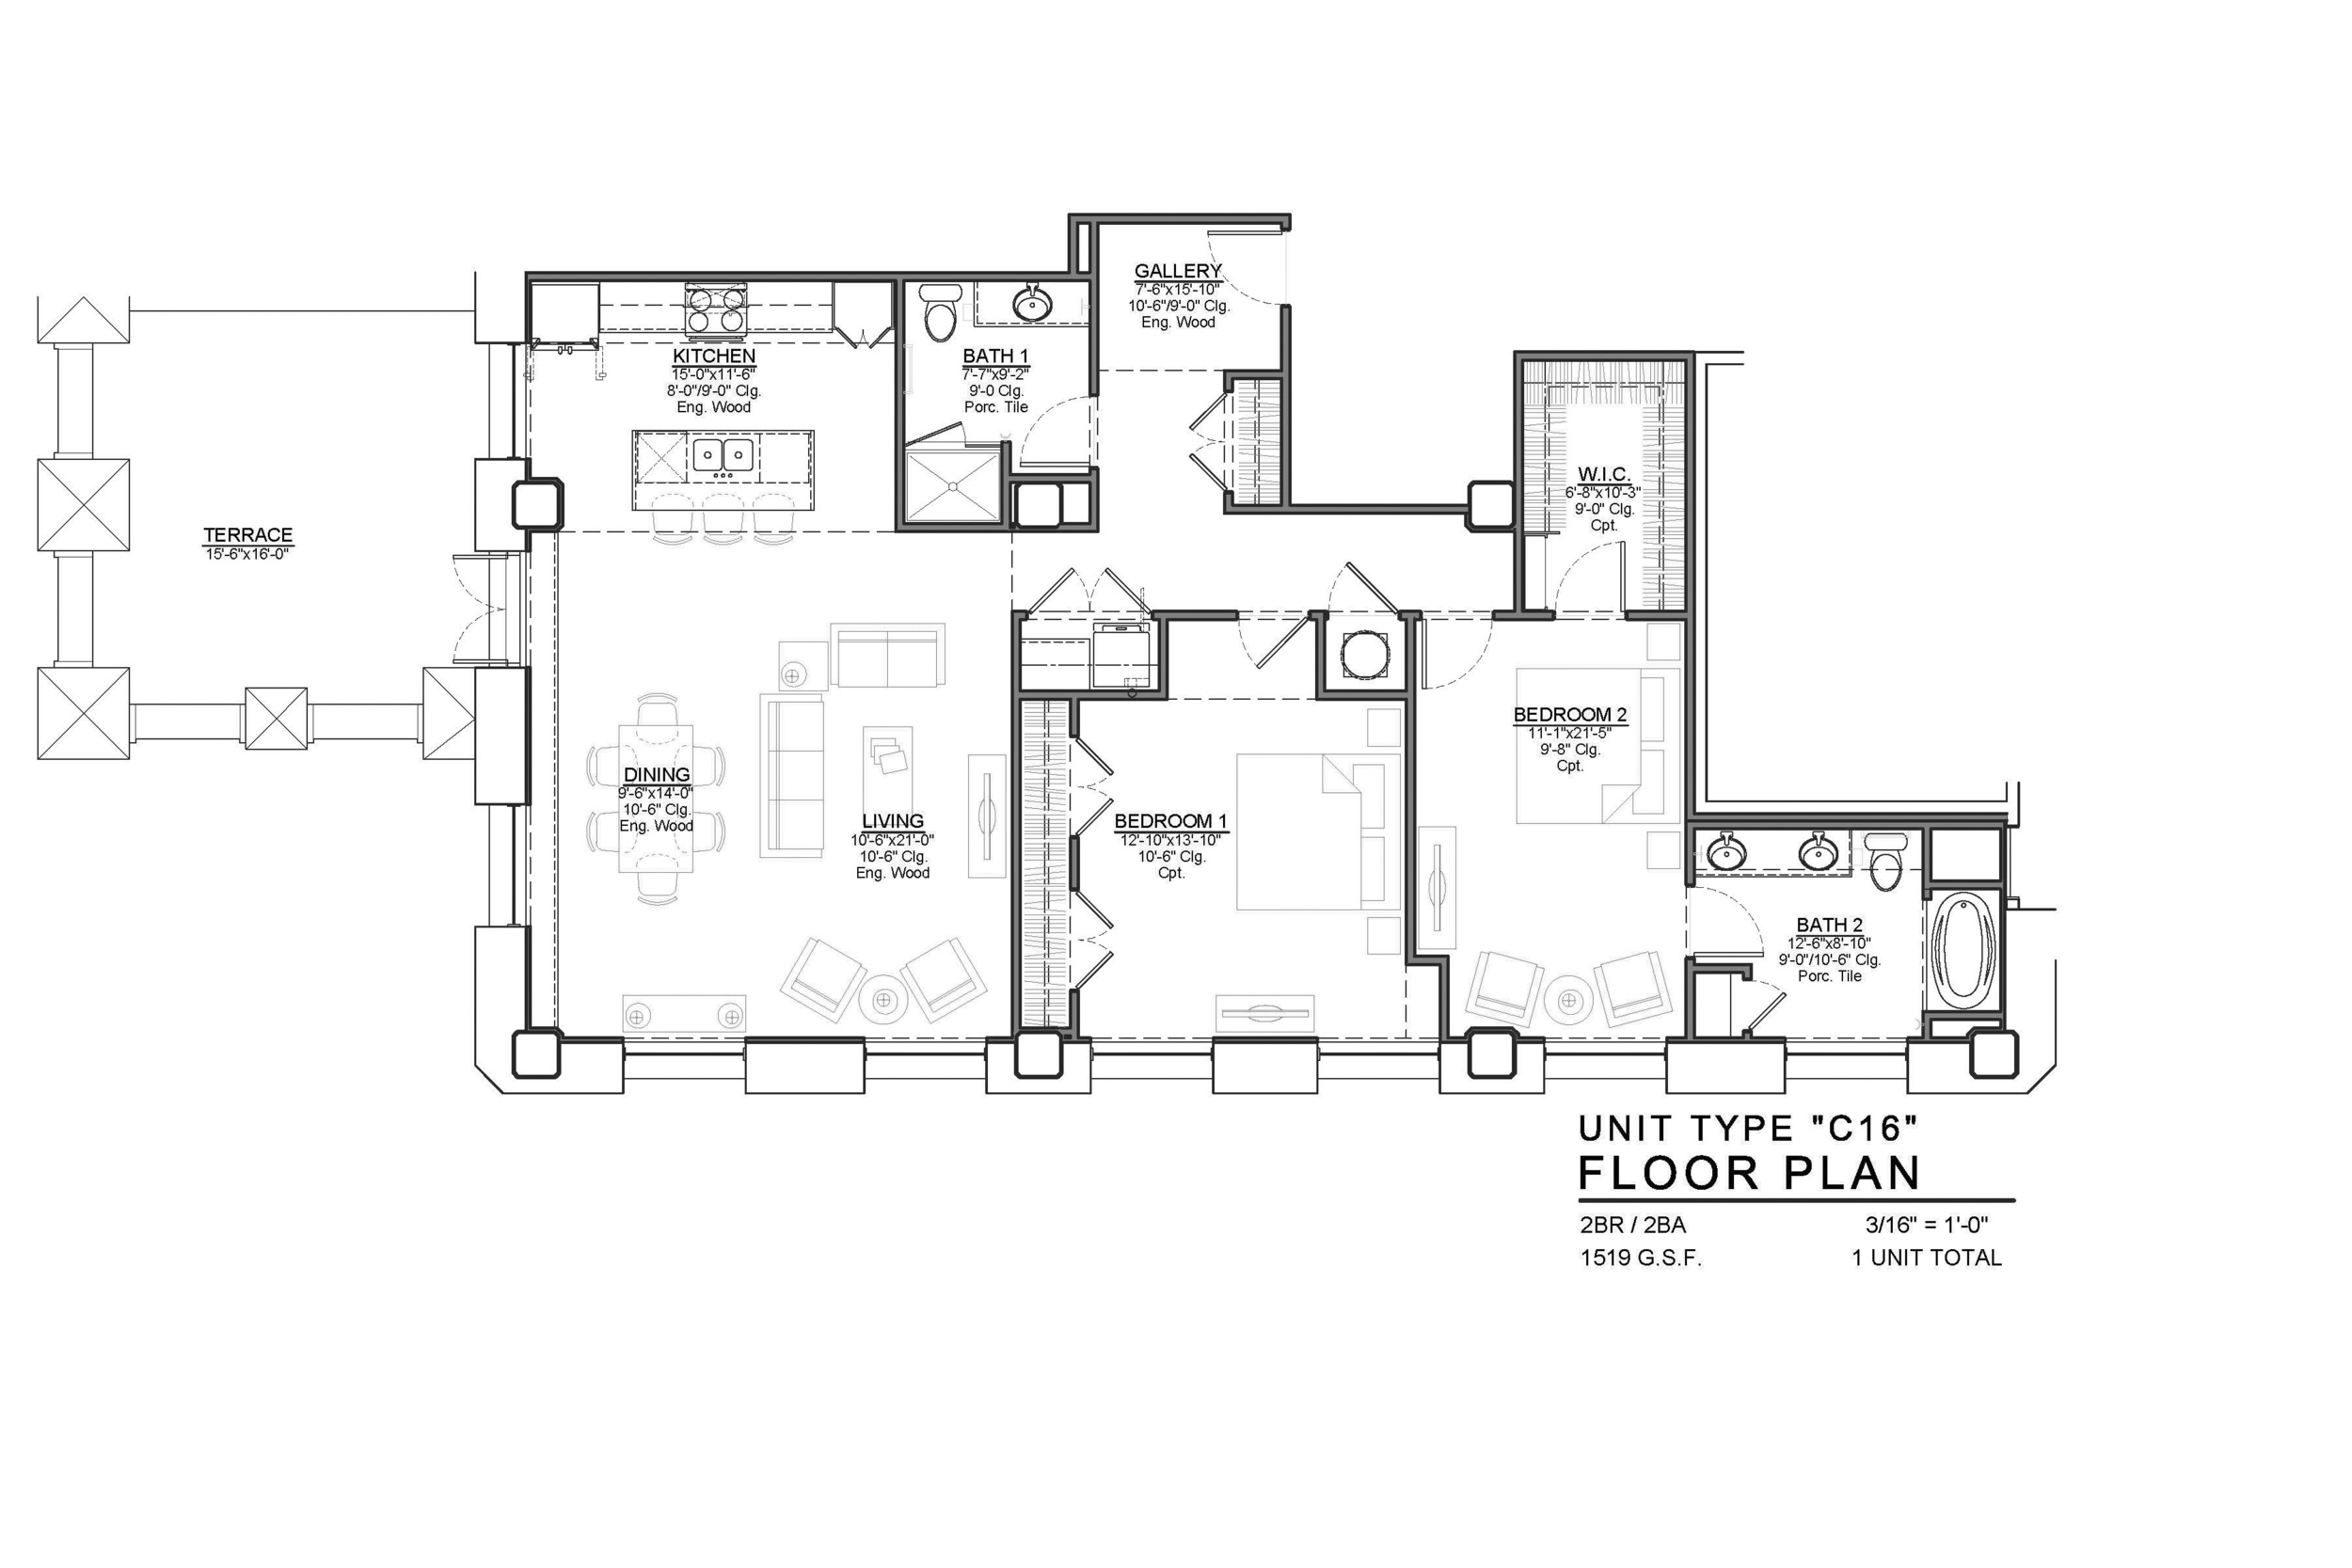 C16 FLOOR PLAN: 2 BEDROOM / 2 BATH